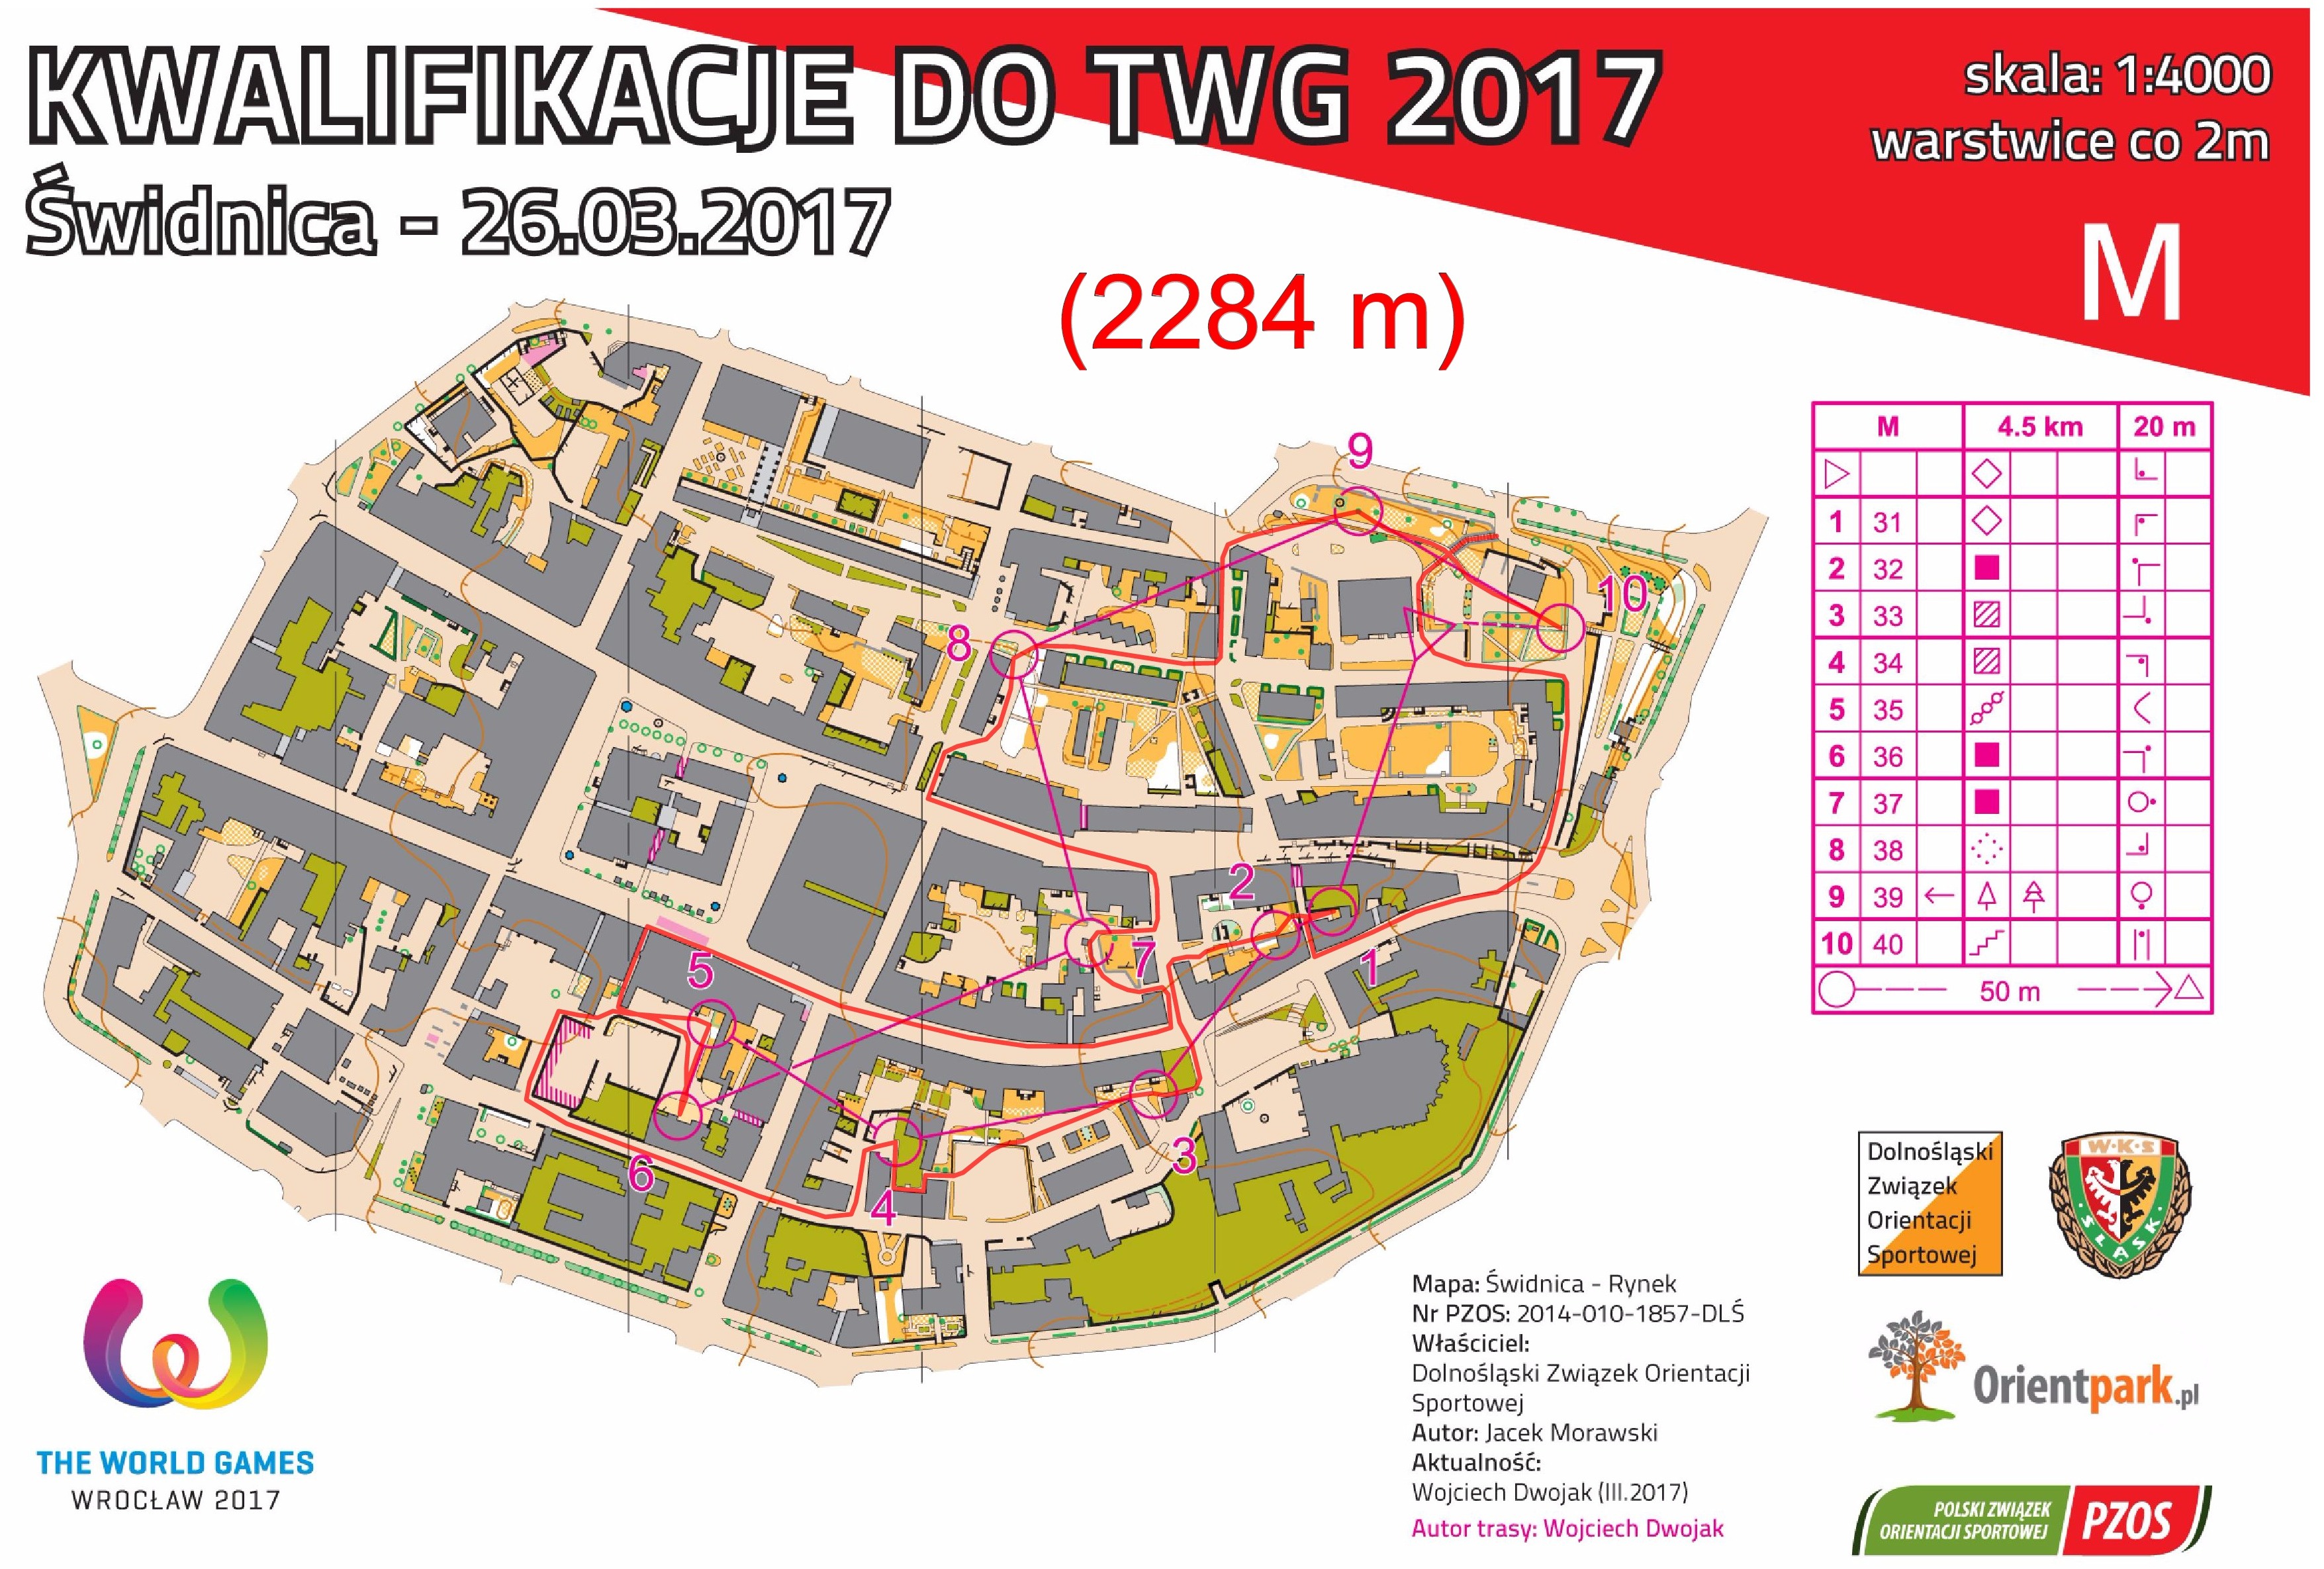 kwalifikacje do TWG - sprint #2, cz. I (2017-03-26)